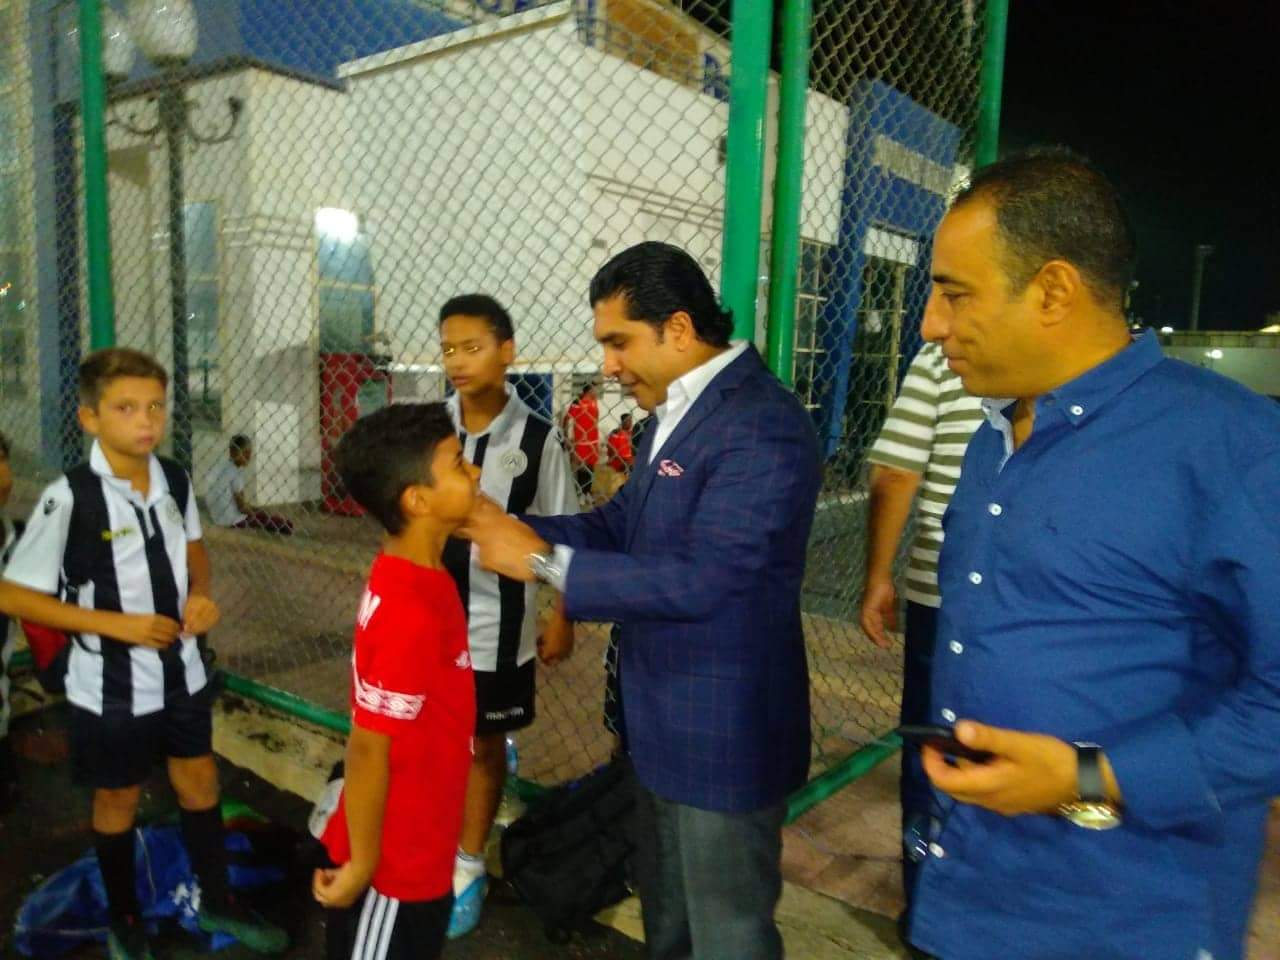 رئيس الاتحاد يتفقد المدينة الرياضية بشرم الشيخ